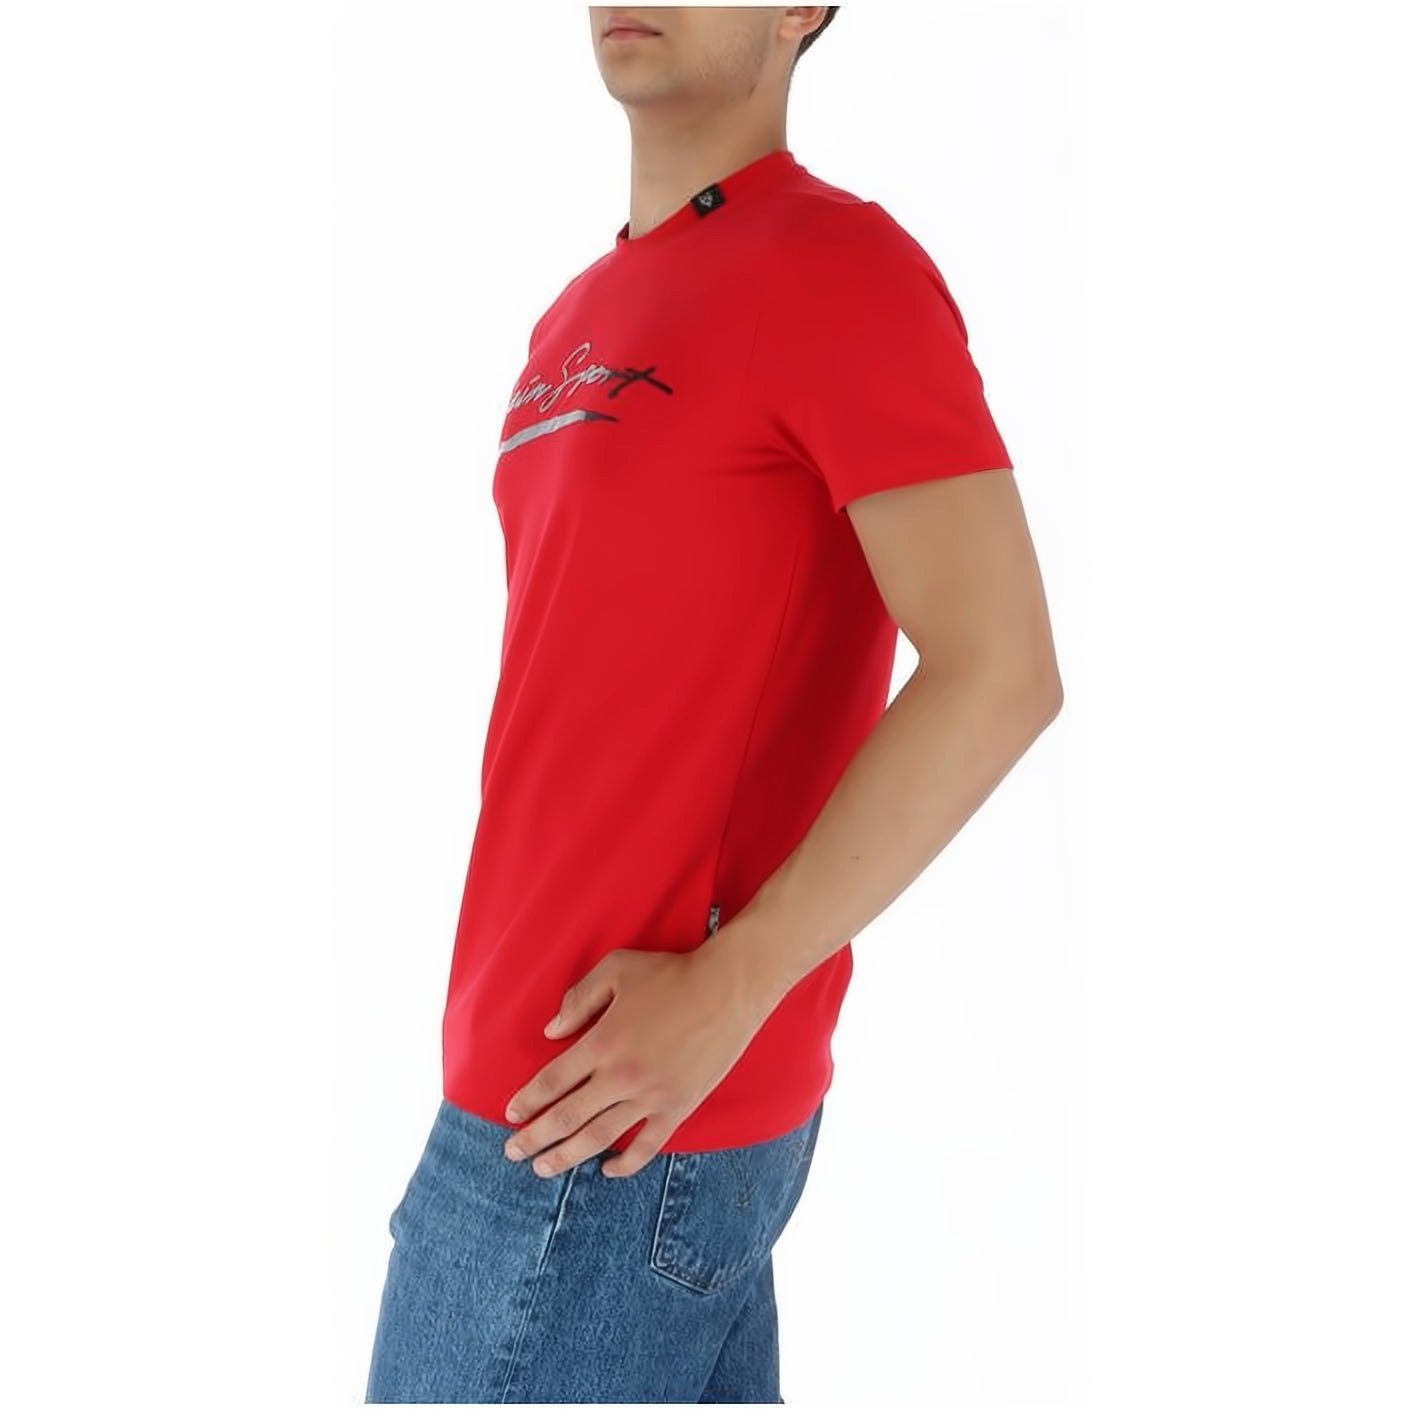 Stylischer T-Shirt PLEIN SPORT Farbauswahl NECK hoher Look, ROUND vielfältige Tragekomfort,